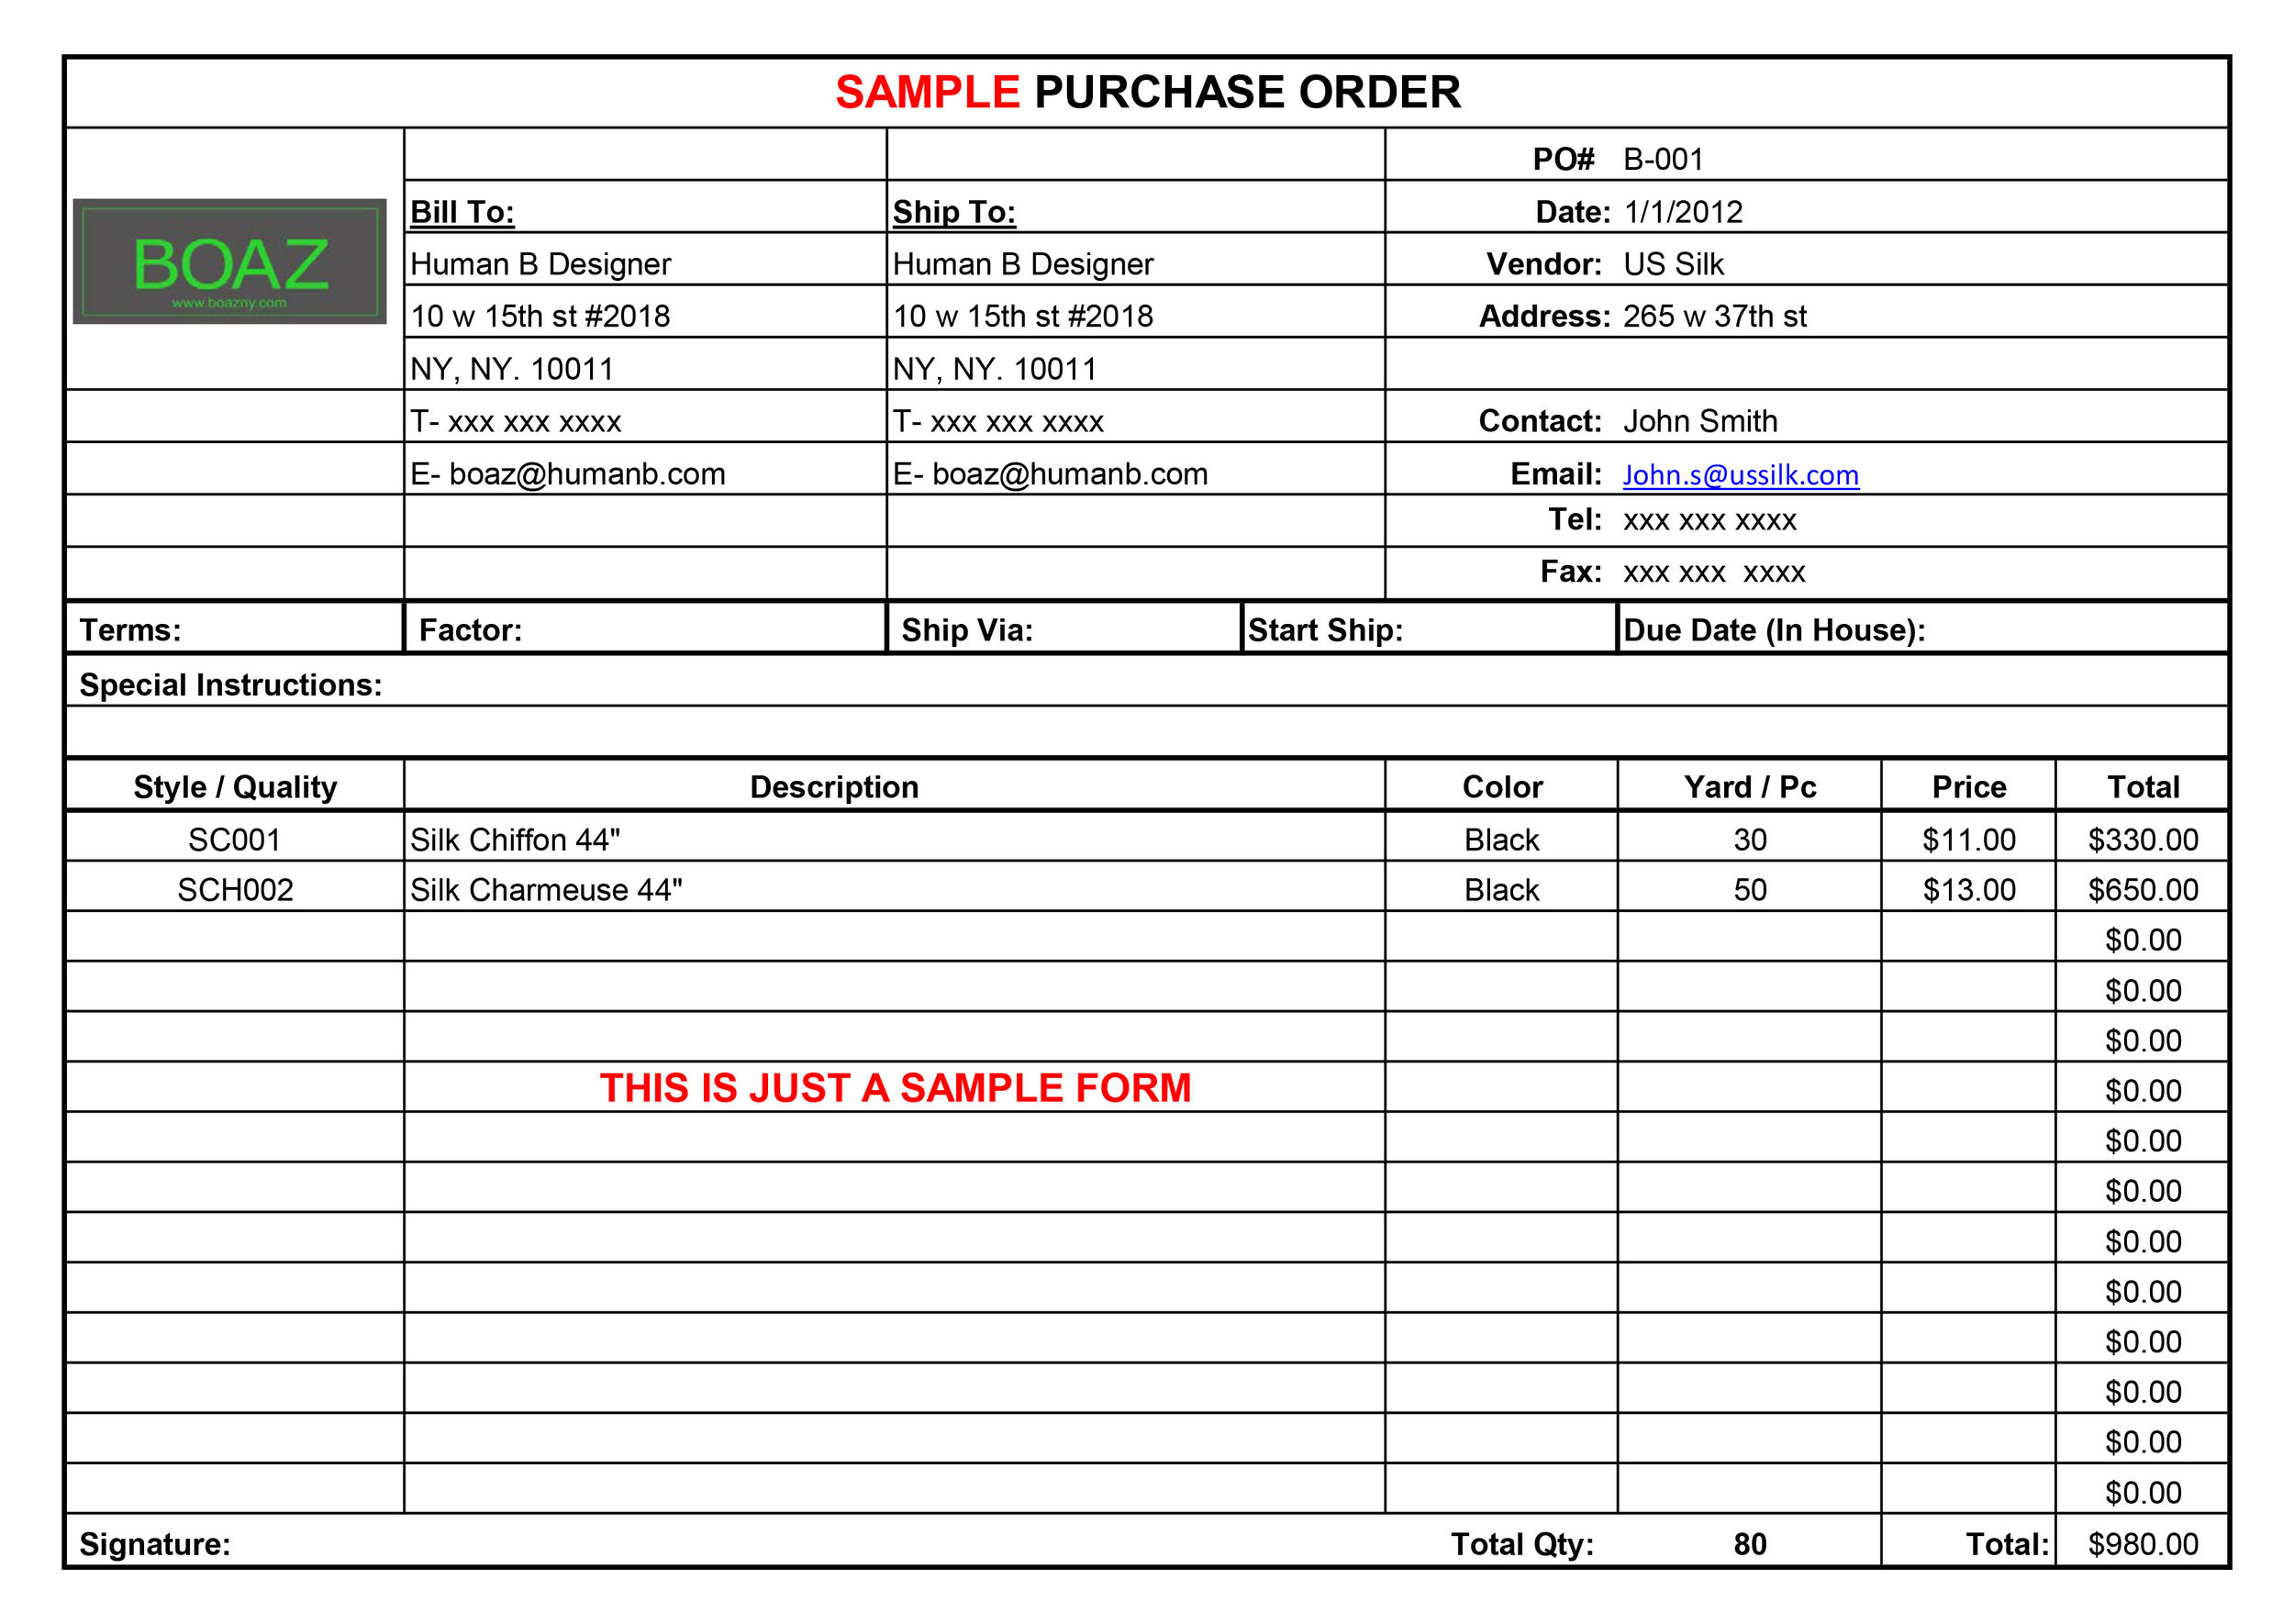 Sample Purchase Order.jpg